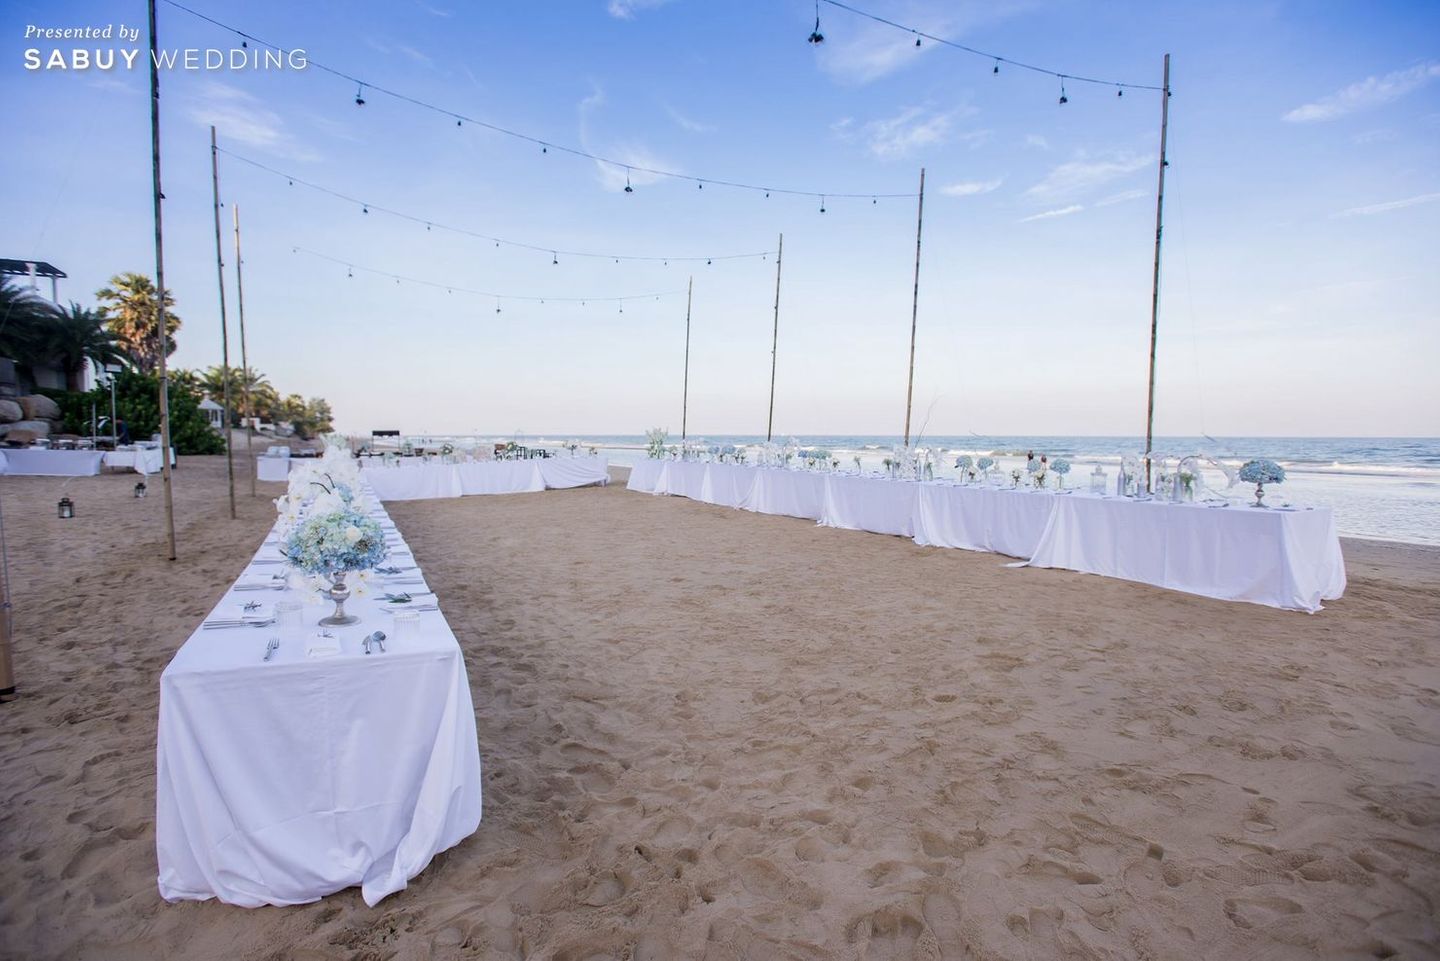 long-table,งานแต่งริมทะเล,งานแต่ง outdoor,สถานที่แต่งงาน,สถานที่จัดงานแต่งงาน รีวิวงานแต่งริมทะเลสุดแซ่บ ไม่เคร่งพิธี เน้นอาฟเตอร์ปาร์ตี้มันส์ๆ @Villa Maroc